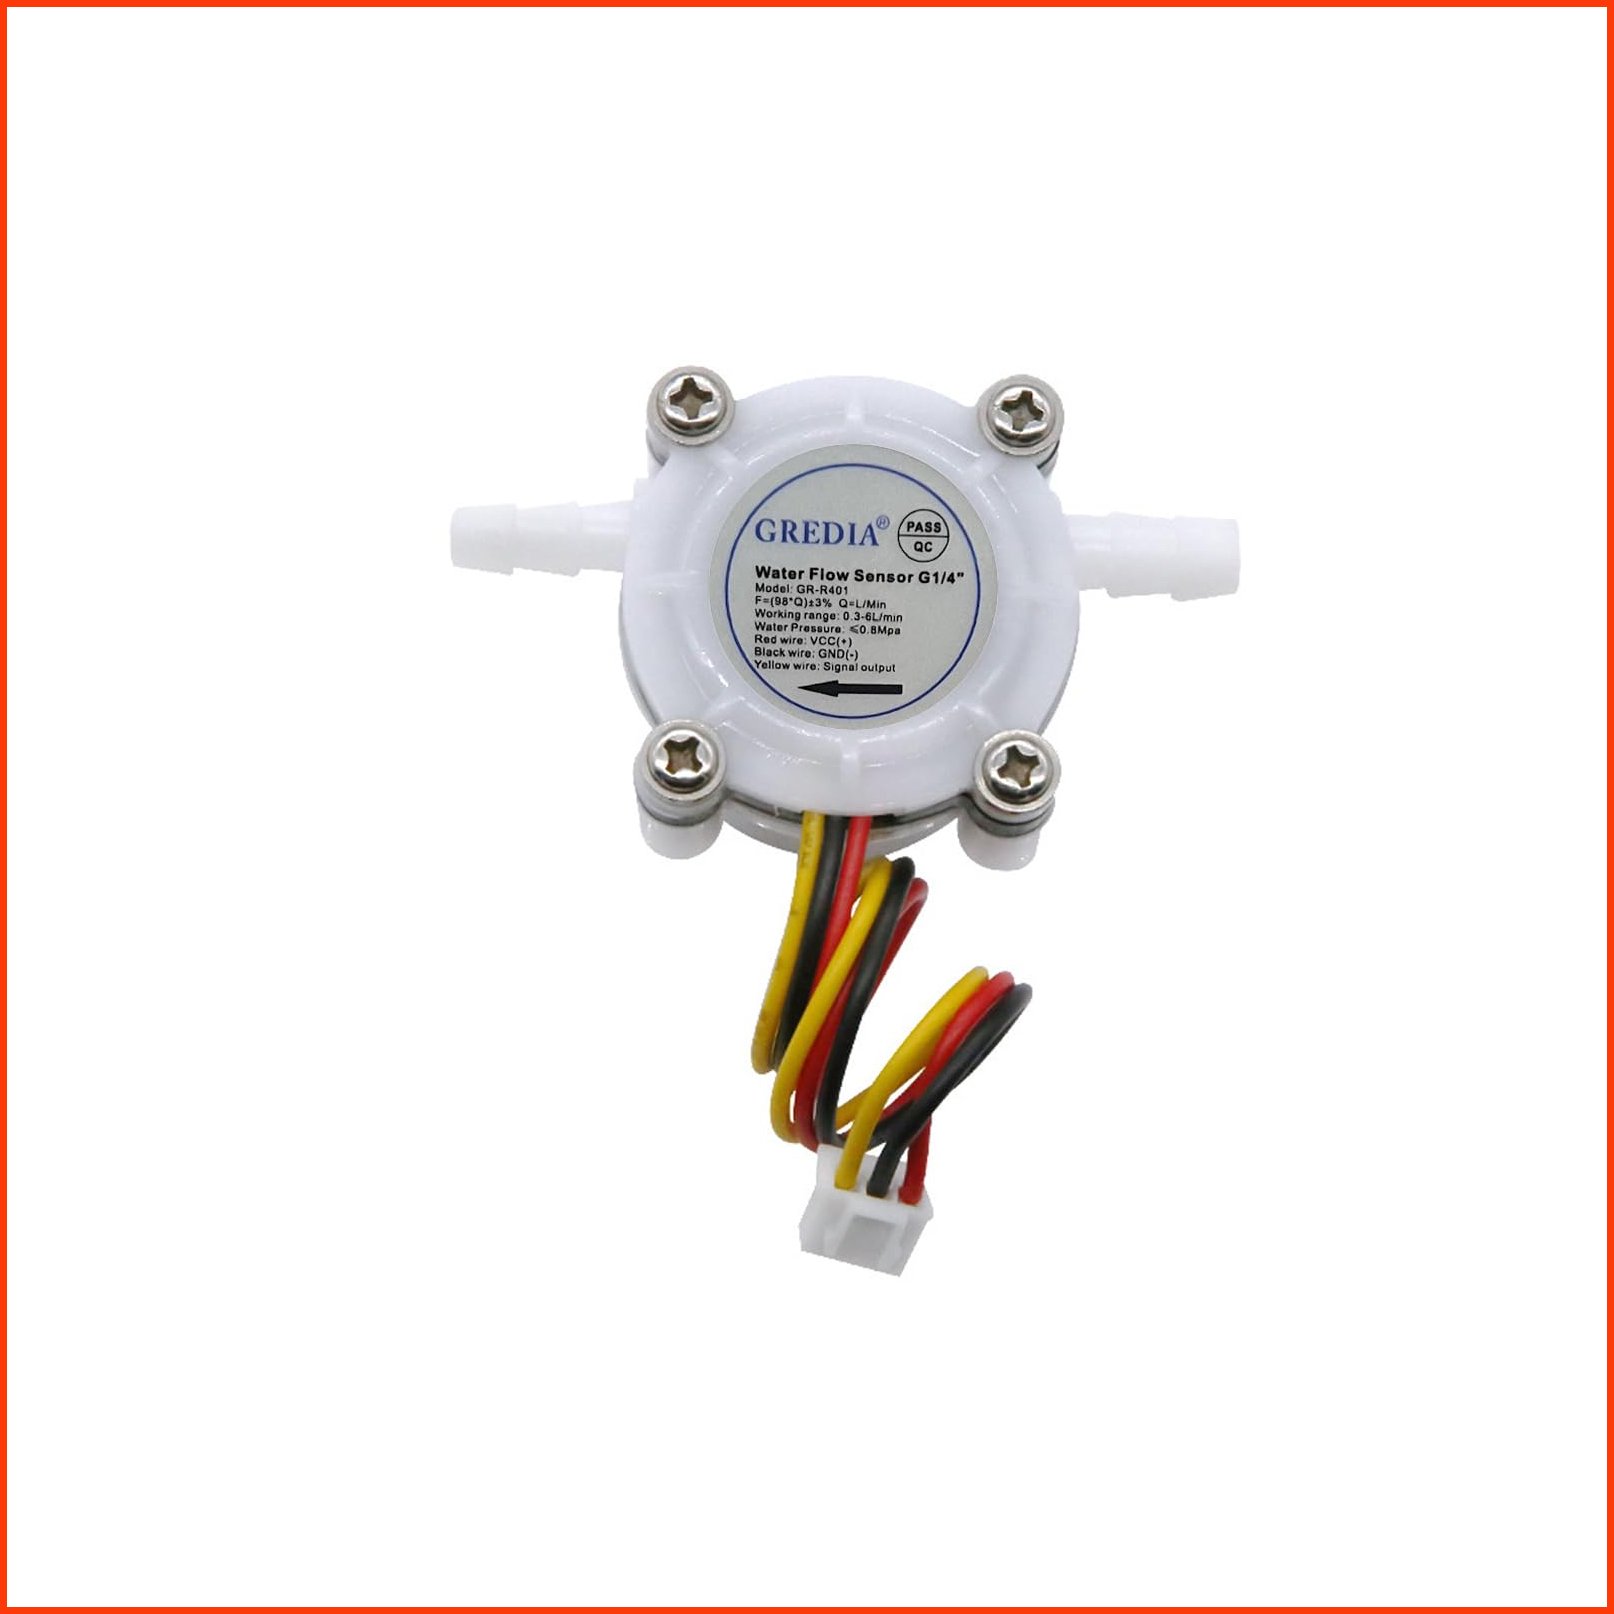 並行輸入品GREDIA 14 Water Flow Sensor Food-Grade Switch Hall Effect Flowmeter Fluid Meter Counter Connect Hosepipe 0.5